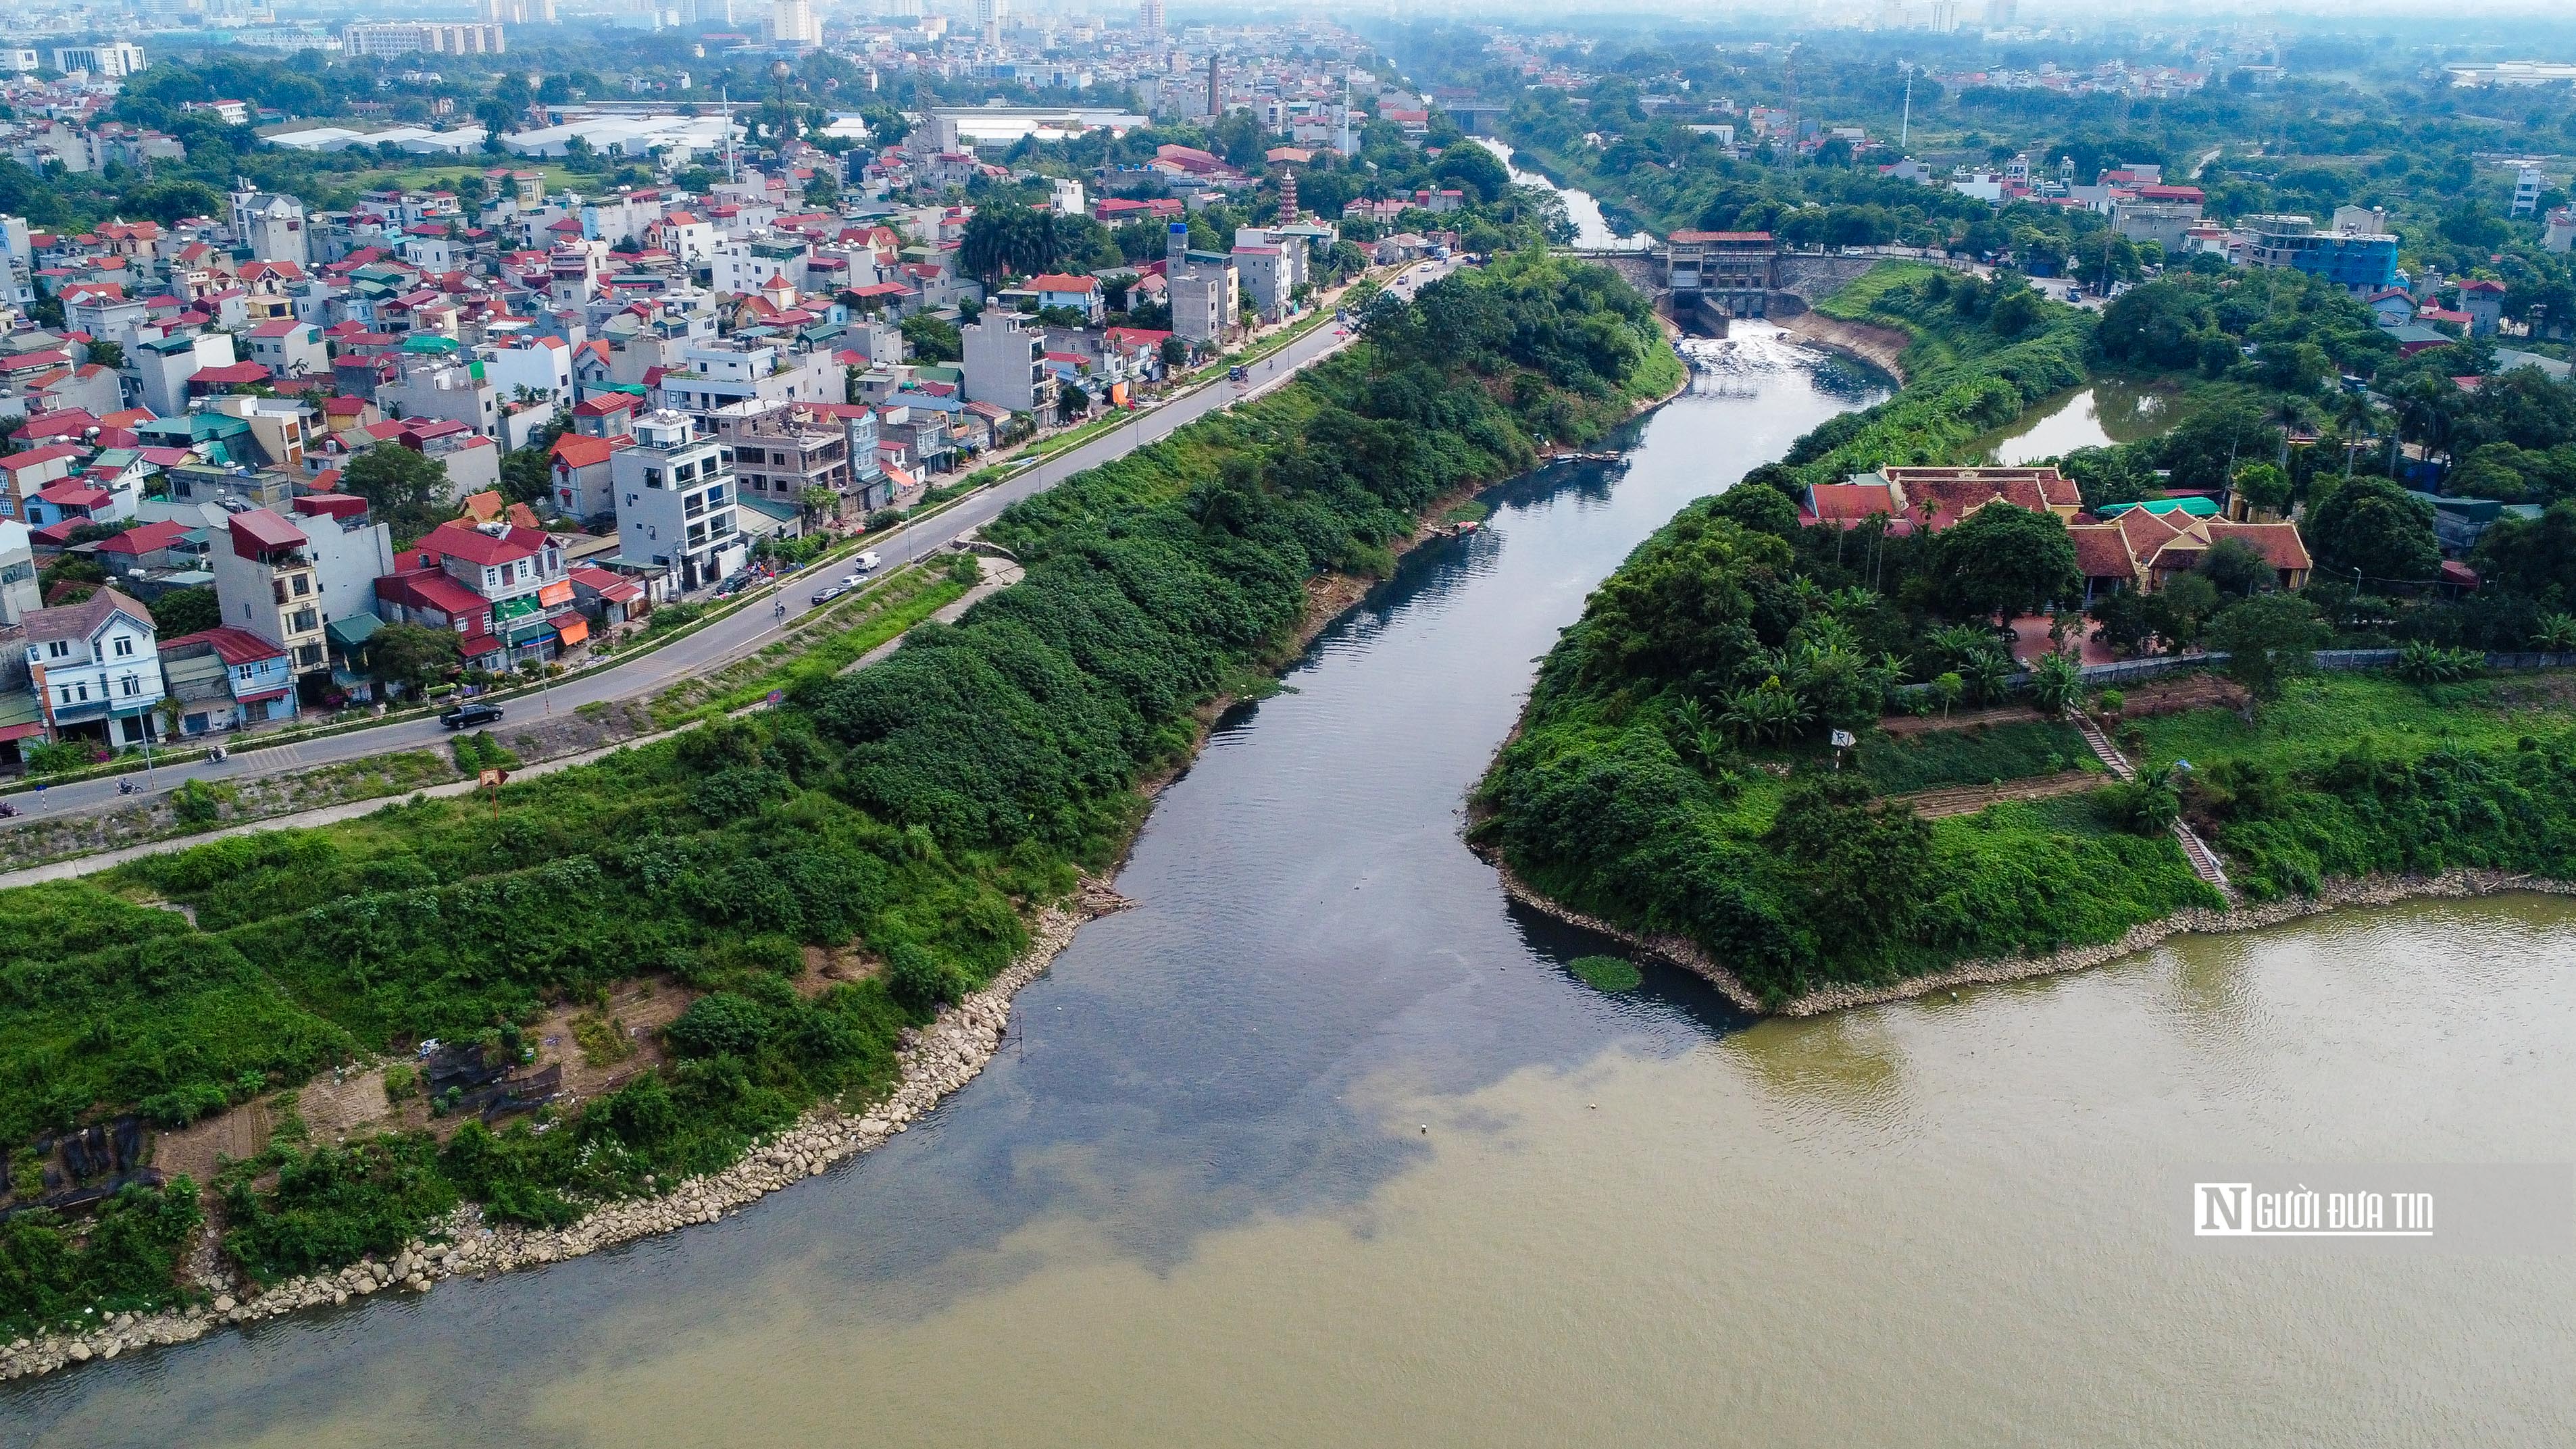 Dân sinh - Nước sông Nhuệ ô nhiễm trầm trọng, chảy ngược ra sông Hồng  (Hình 14).